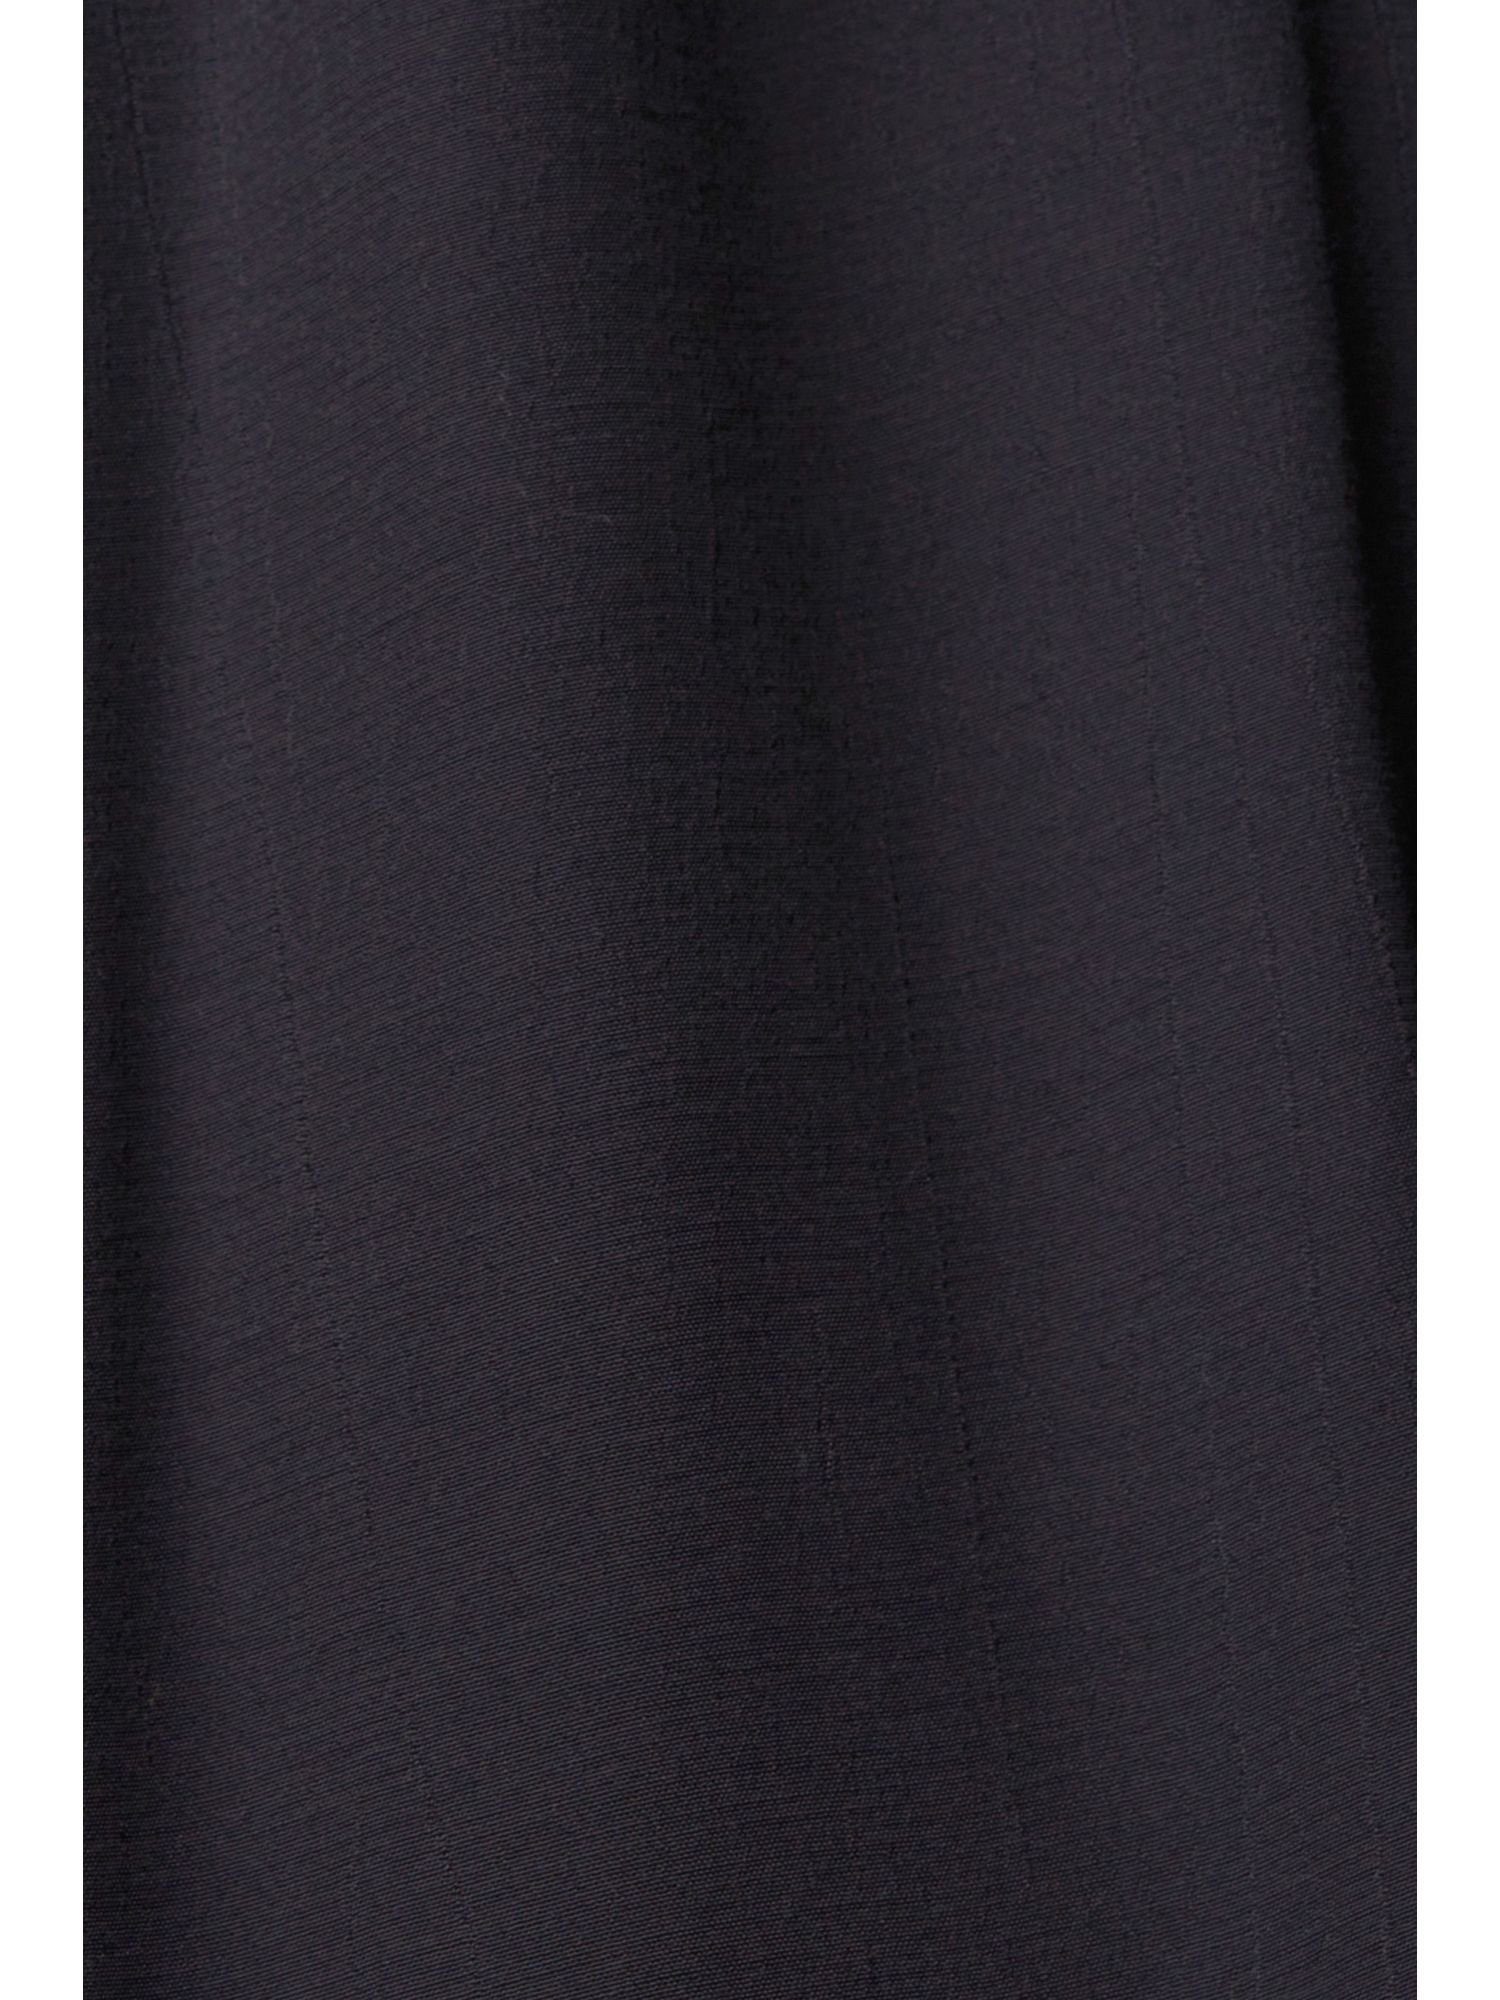 edc by Esprit Minikleid Kleid Spitzendetails BLACK mit